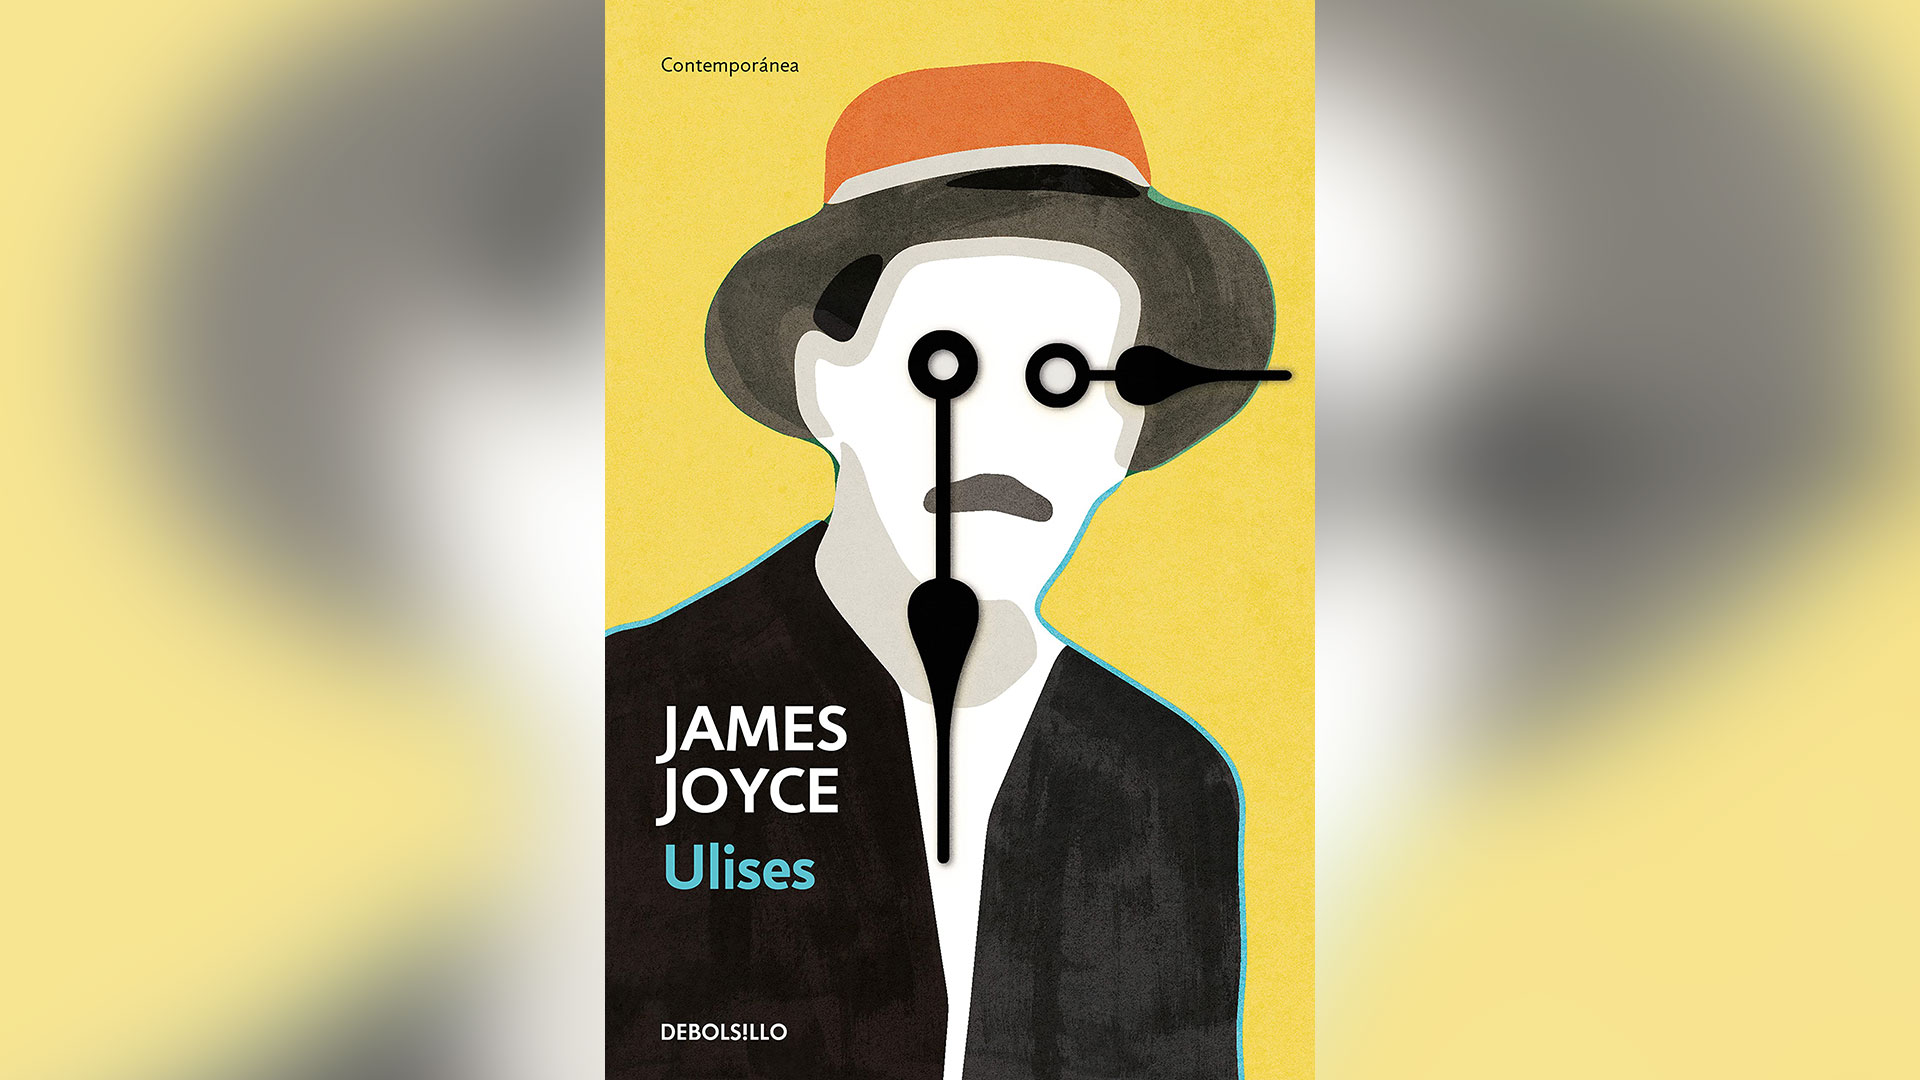 El Ulises de James Joyce, una novela monumental, está considerada una de las obras literarias más importantes del siglo XX.